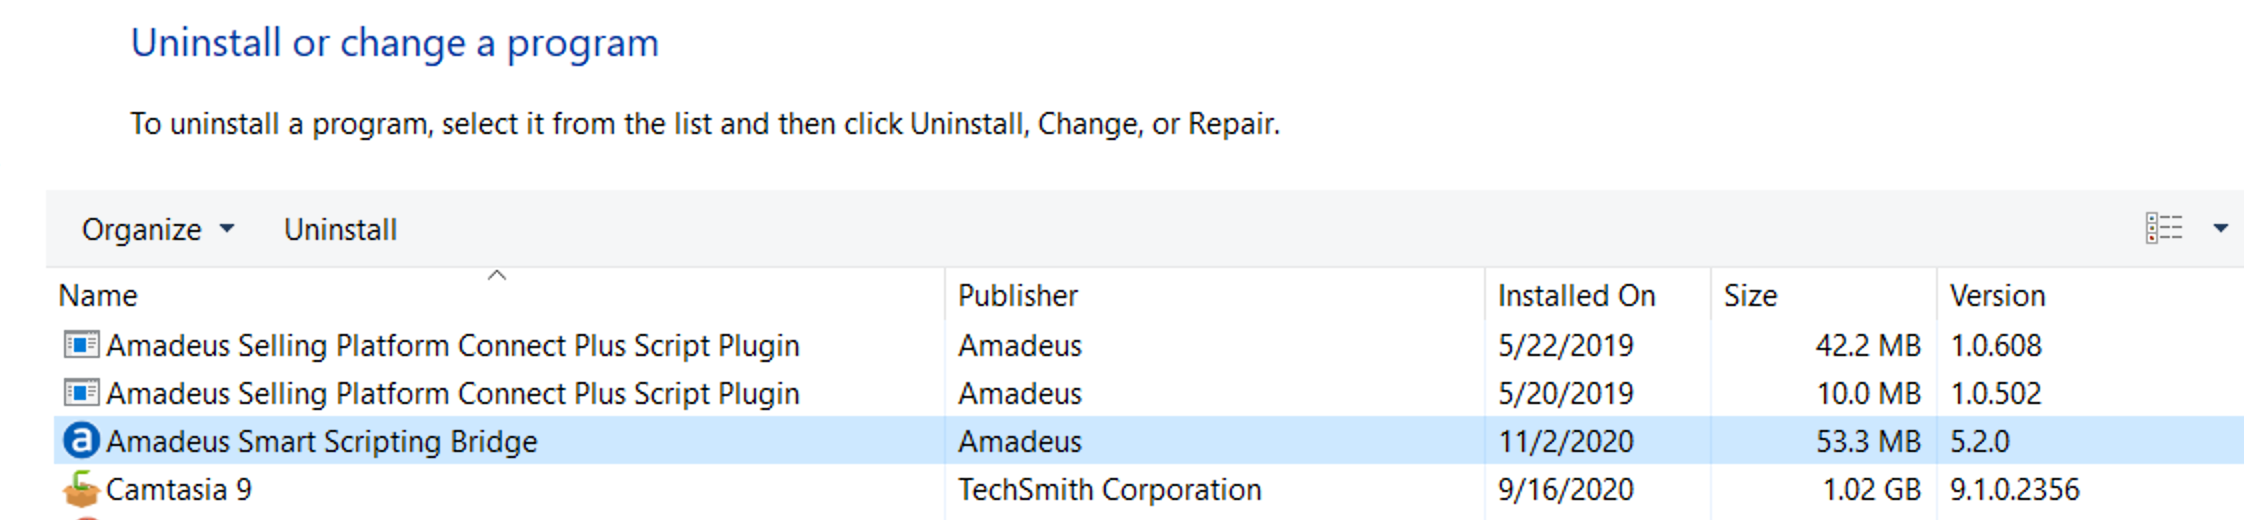 instal the new Amadeus Pro